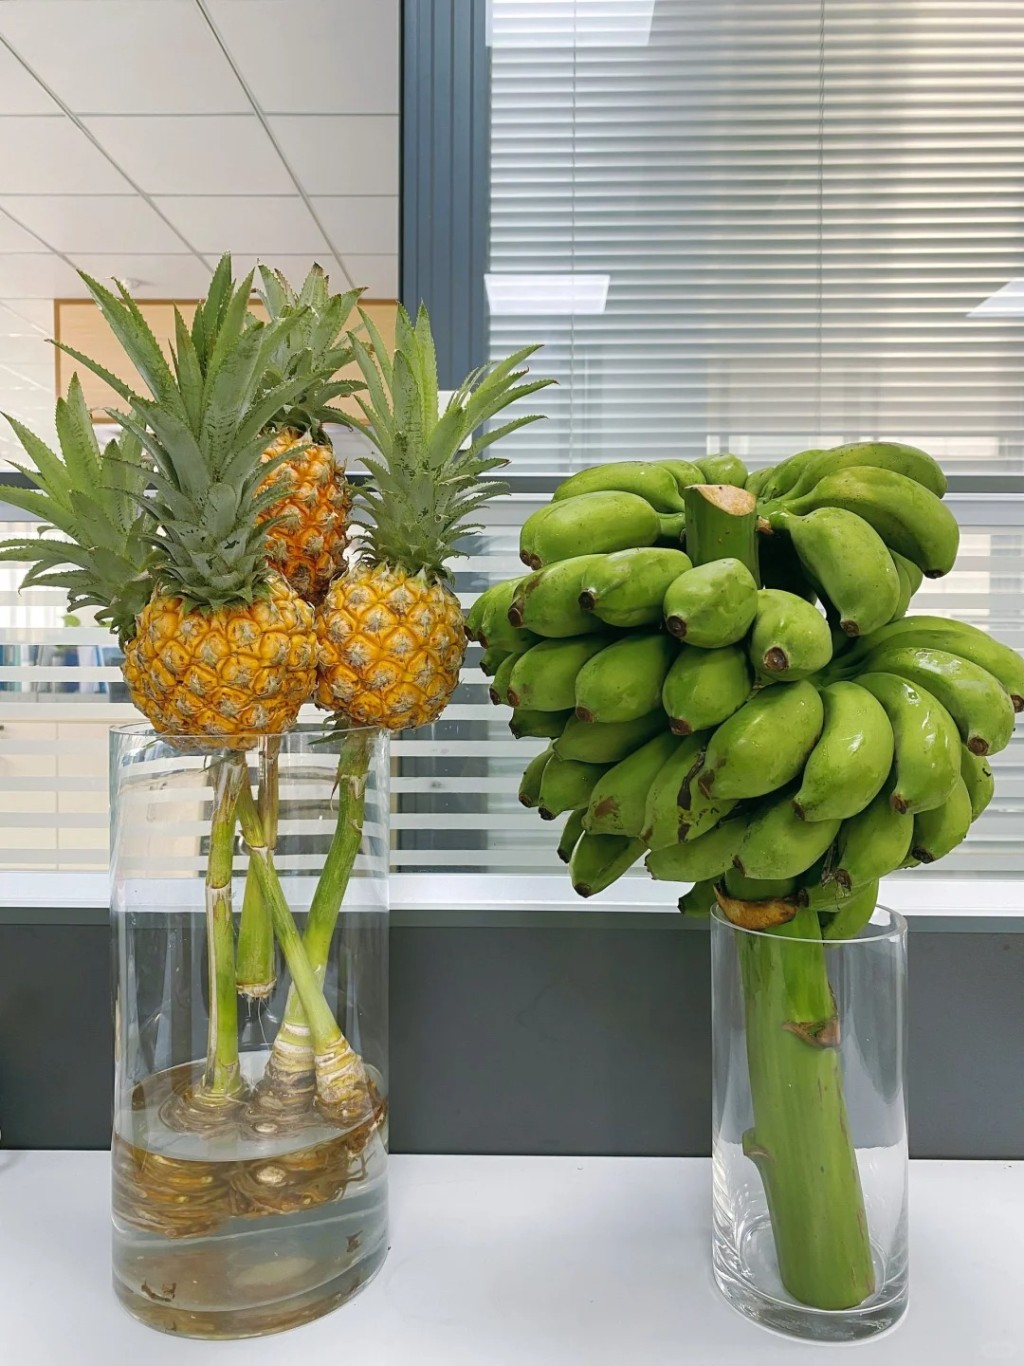 內地年輕白領流行在工作間栽種「蕉綠」、「動感光菠」等諧音水果，認為有紓減壓力功效。小紅書